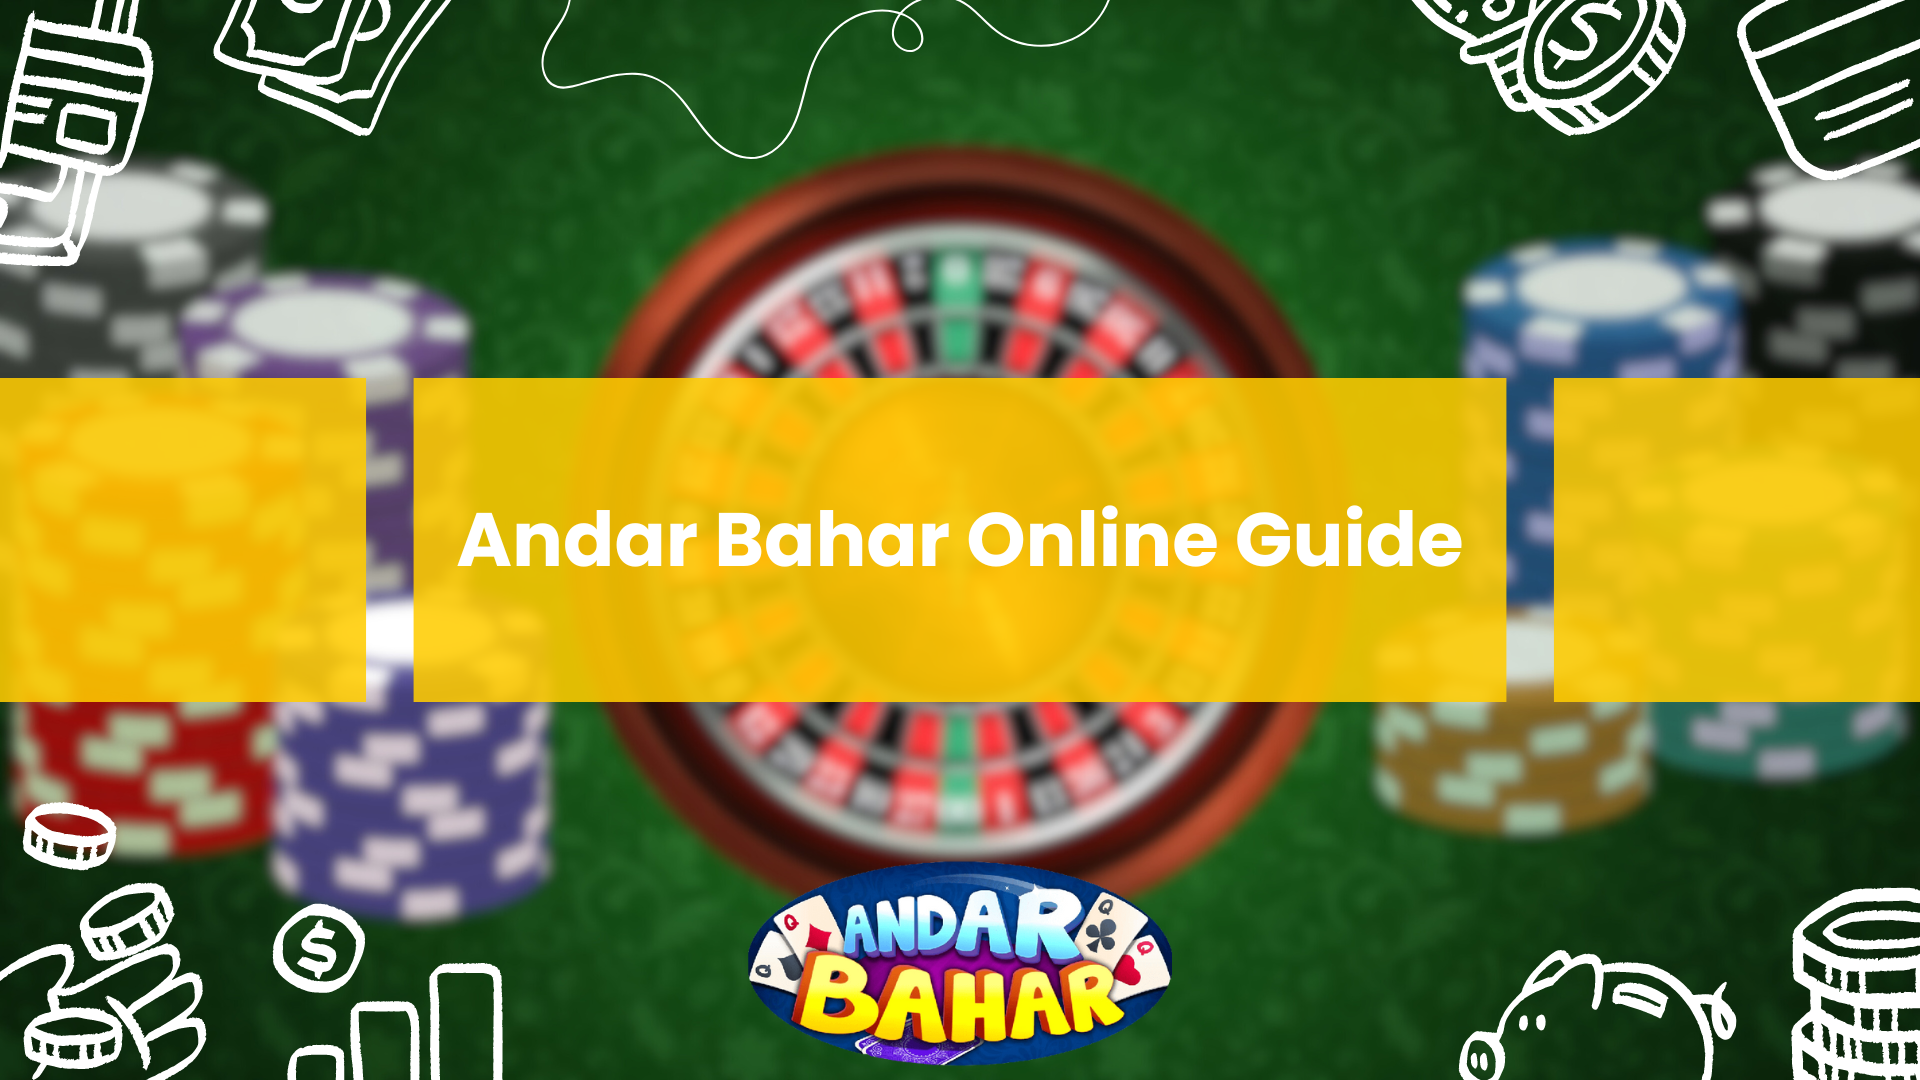 Andar Bahar Online Guide